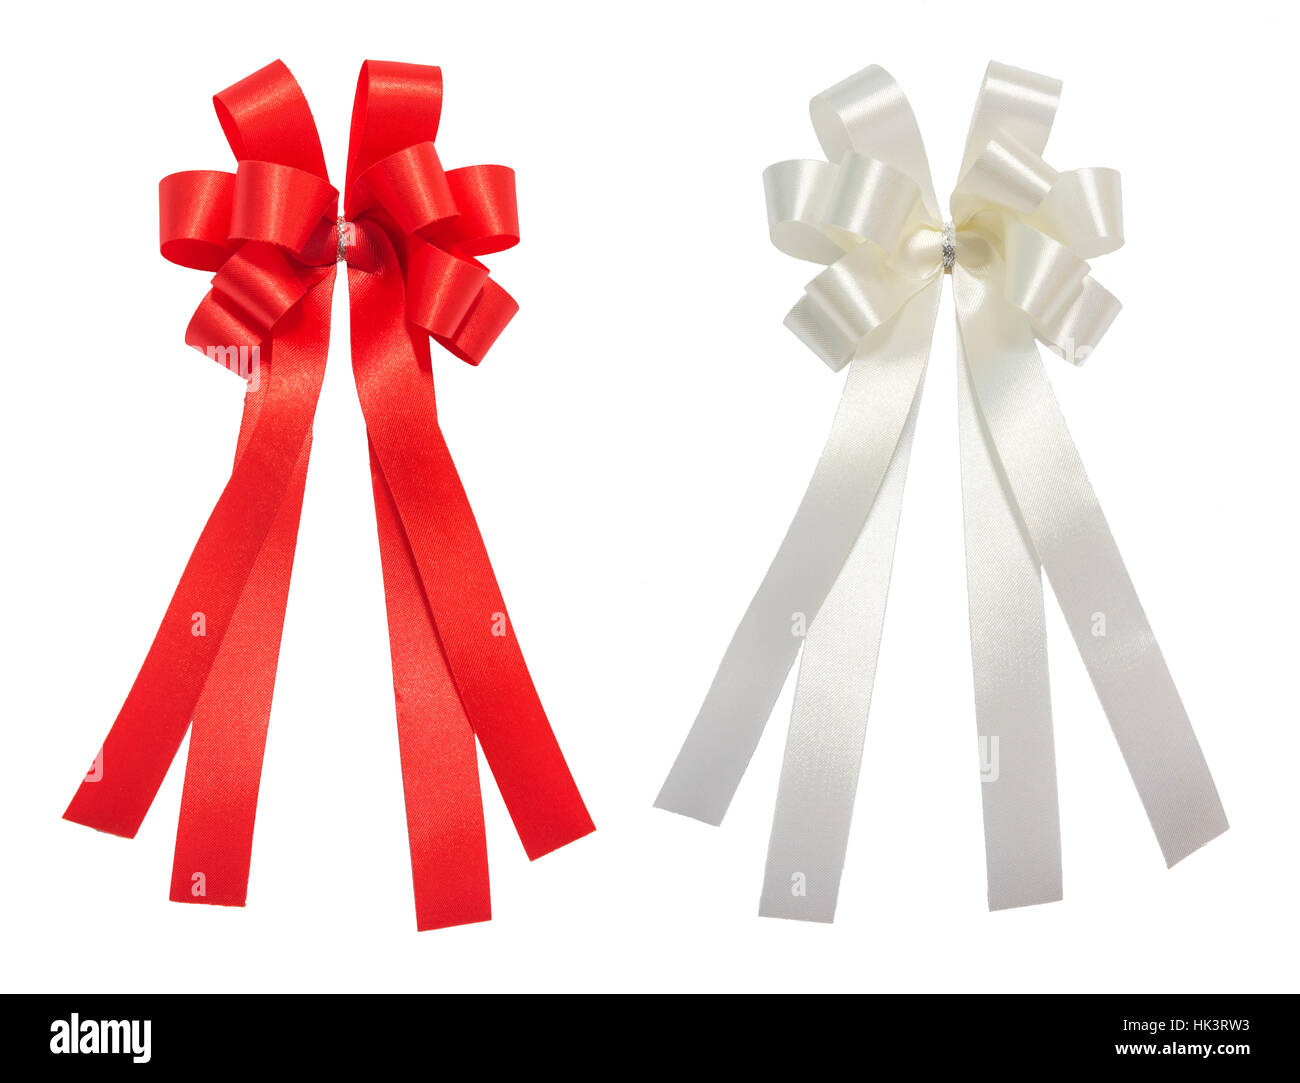 Ruy băng đỏ trắng bóng bẩy luôn làm cho bất kỳ dịp lễ nào trở nên hoàn hảo hơn, đặc biệt là trong mùa giáng sinh. Khi bạn thưởng thức hình ảnh liên quan, bạn không chỉ cảm thấy được không khí lễ hội của mùa đông mà còn có thể đắm mình trong niềm vui và sự thích thú của giải thưởng.